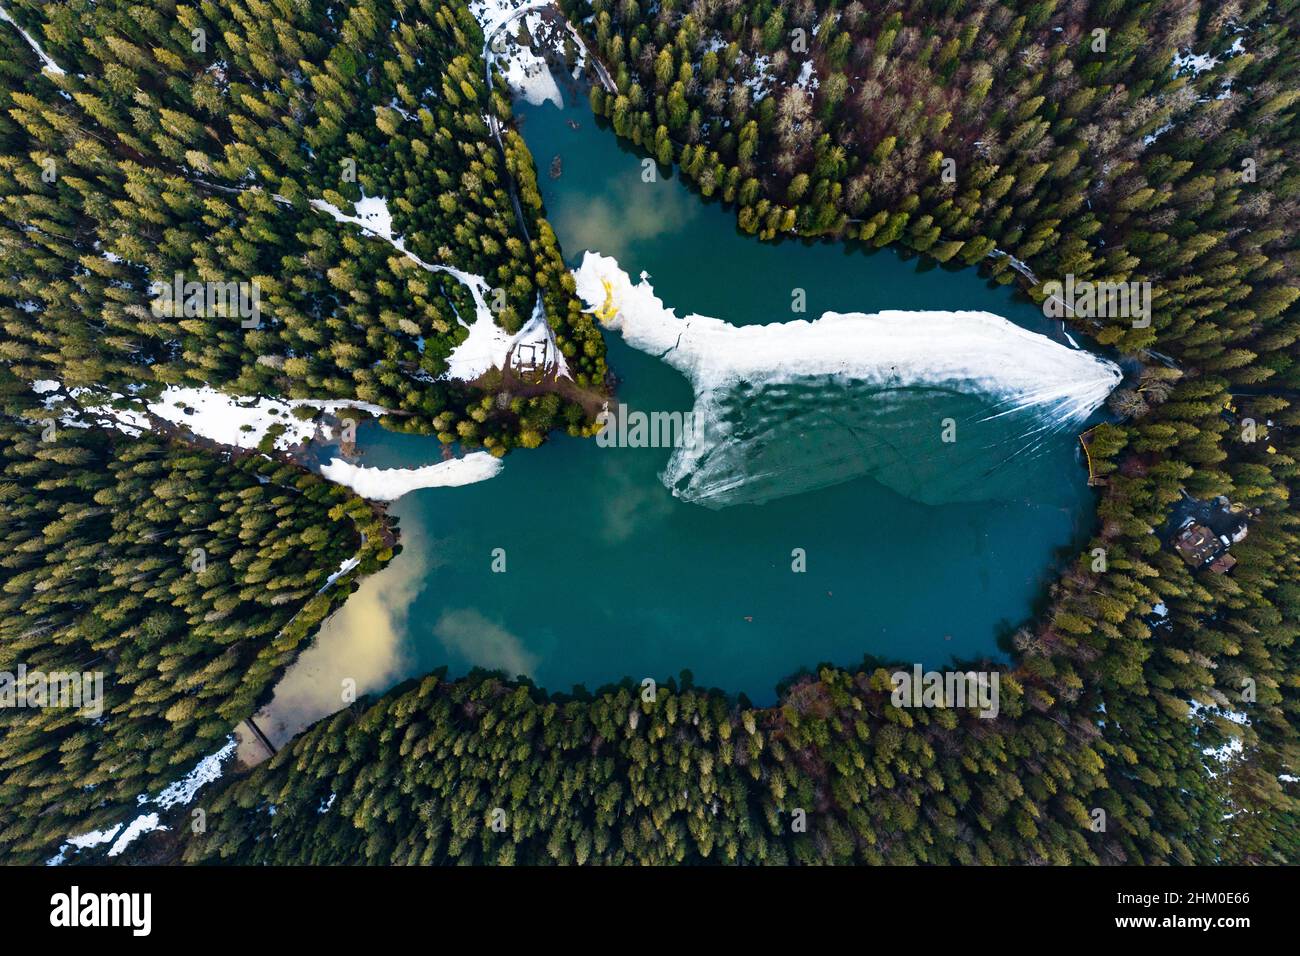 See Synevyr in den Karpaten, Blick von oben auf den See, Bergsee mit Eis bedeckt, Eislinie am See Synevyr, Nationalpark. Stockfoto